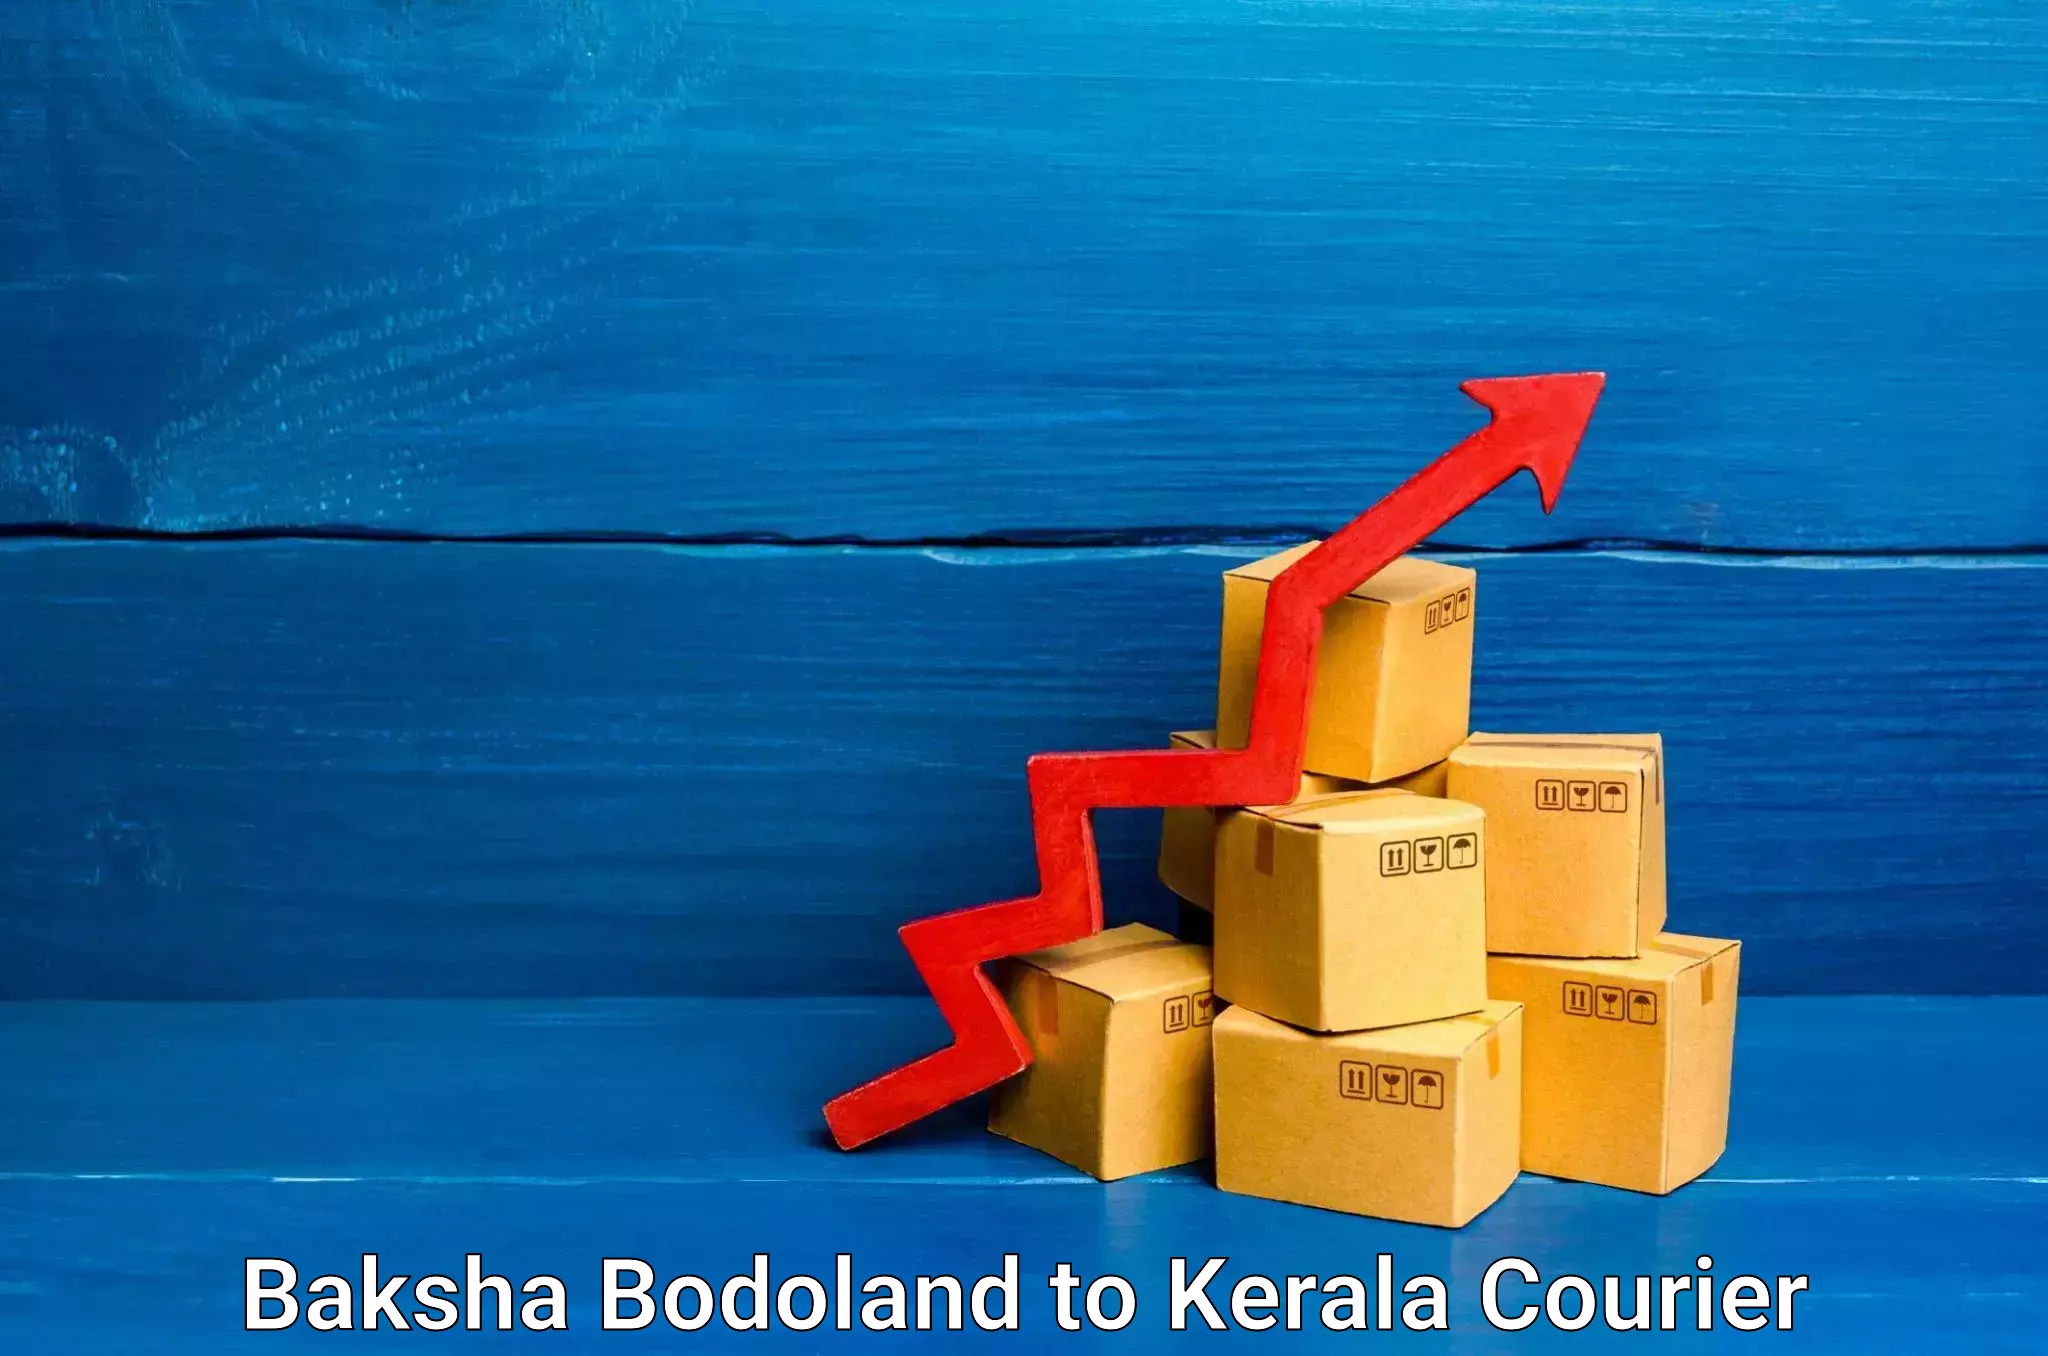 Courier service innovation Baksha Bodoland to Taliparamba